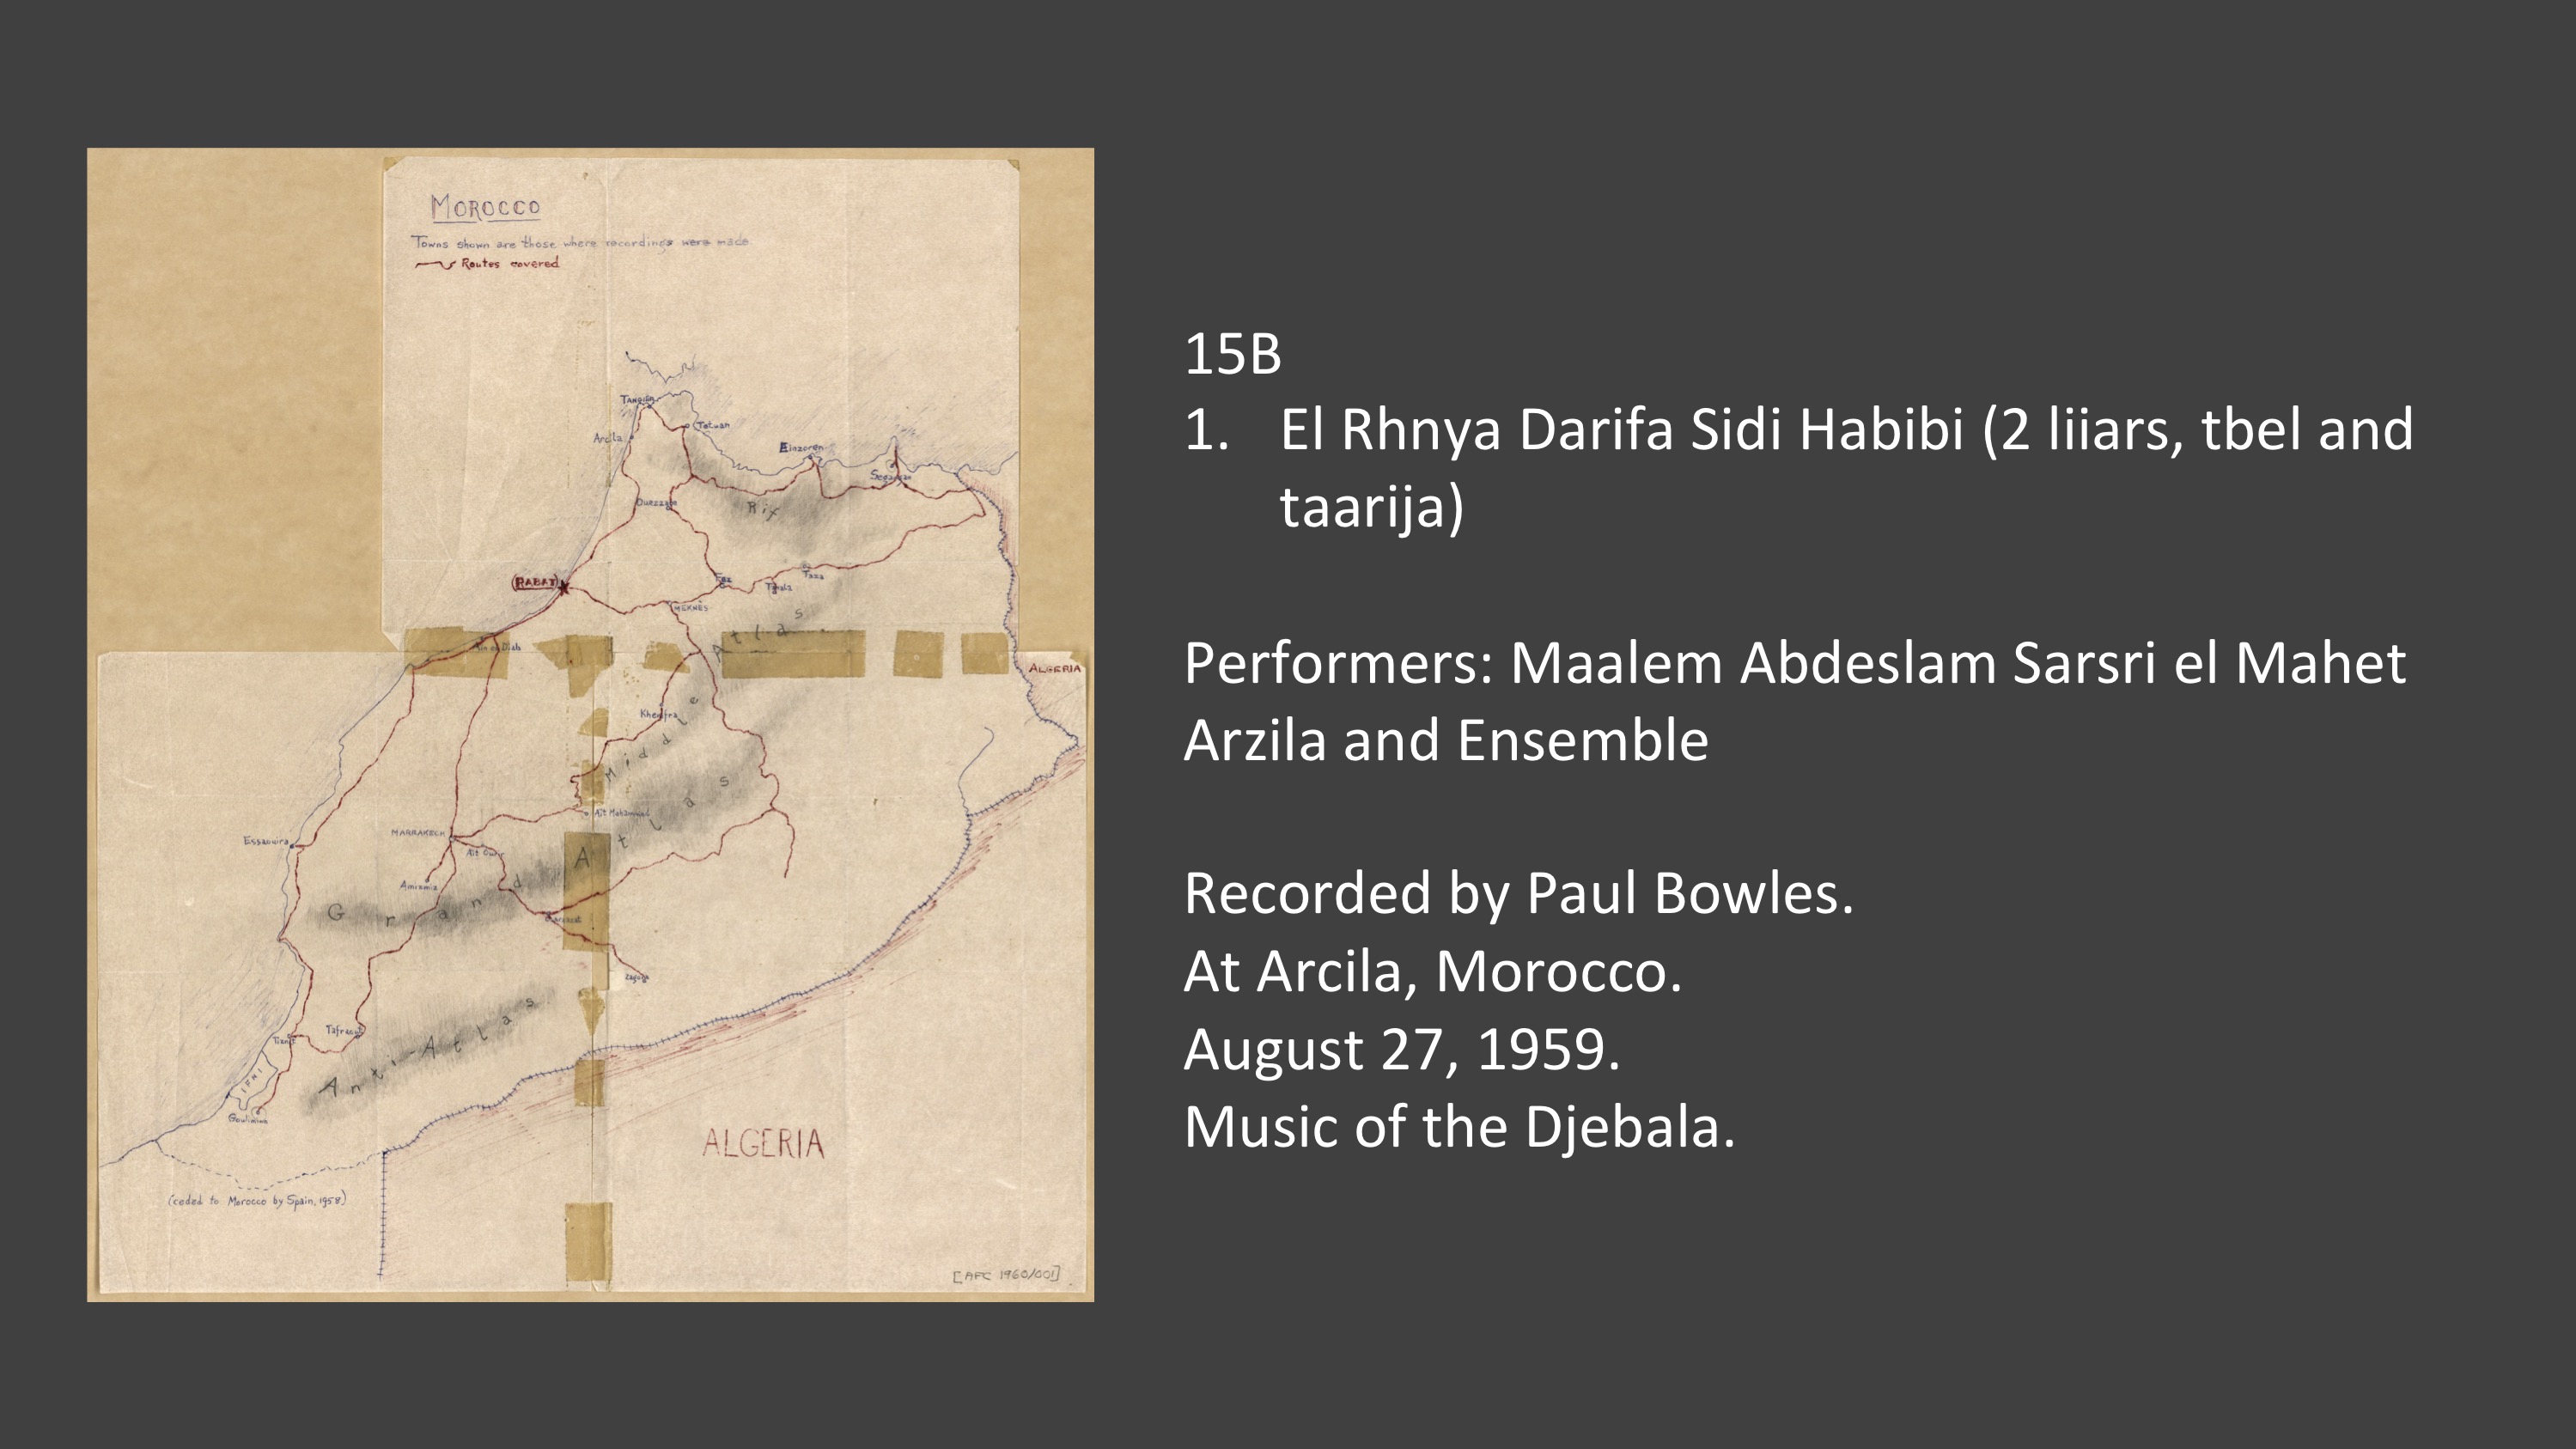 <p>15B 1. El Rhnya Darifa Sidi Habibi (2 liiars, tbel and taarija) Performers: Maalem Abdeslam Sarsri el Mahet Arzila and Ensemble Recorded by Paul Bowles. At Arcila, Morocco. August 27, 1959. Music of the Djebala.</p>